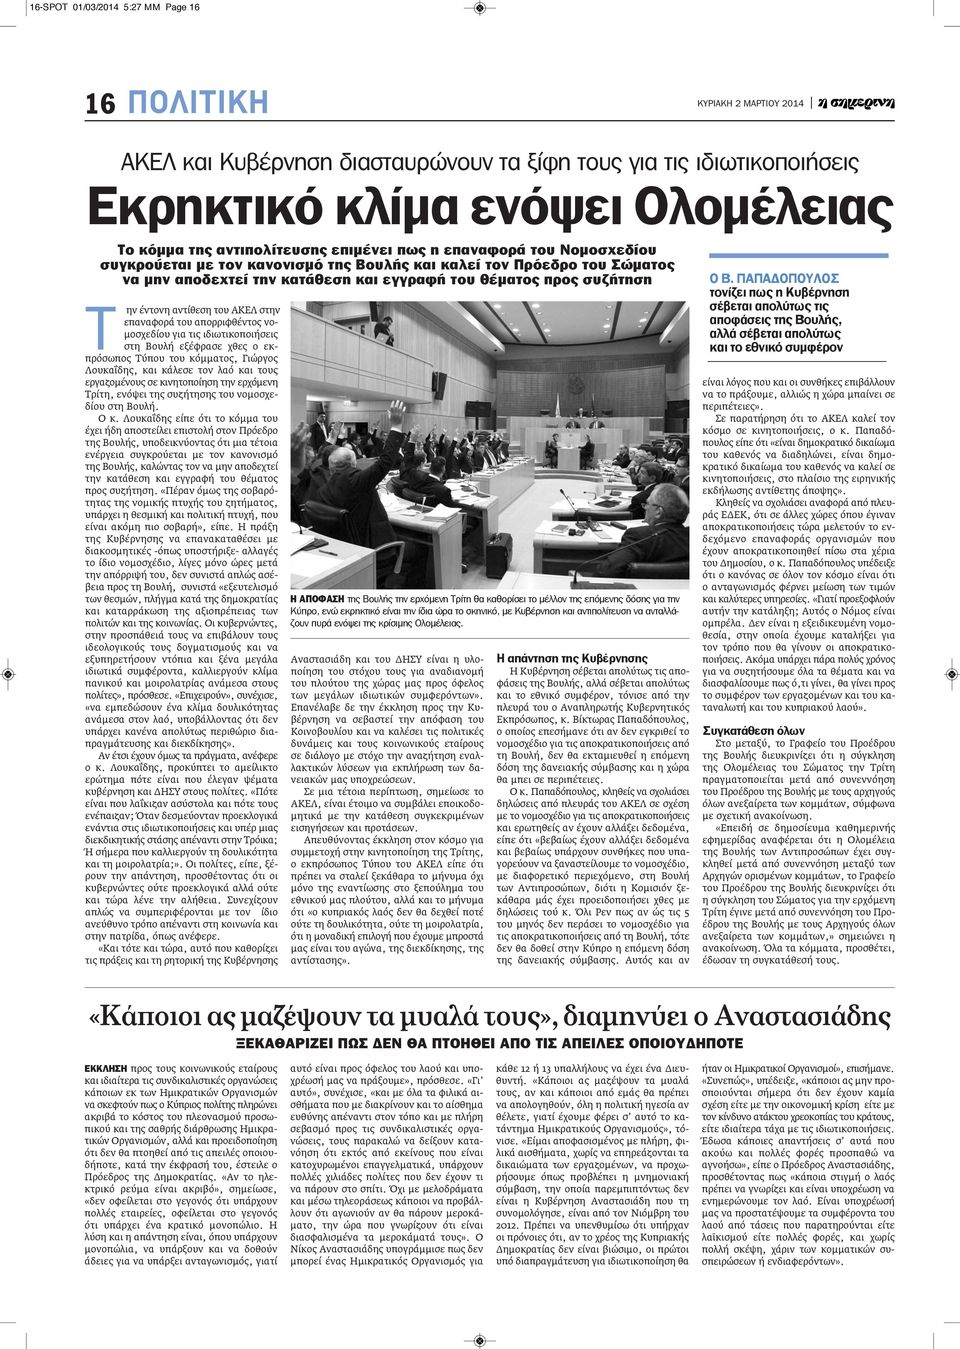 ην έντονη αντίθεση του ΑΚΕΛ στην επαναφορά του απορριφθέντος νομοσχεδίου για τις ιδιωτικοποιήσεις στη Βουλή εξέφρασε χθες ο εκπρόσωπος Τύπου του κόμματος, Γιώργος Λουκαΐδης, και κάλεσε τον λαό και